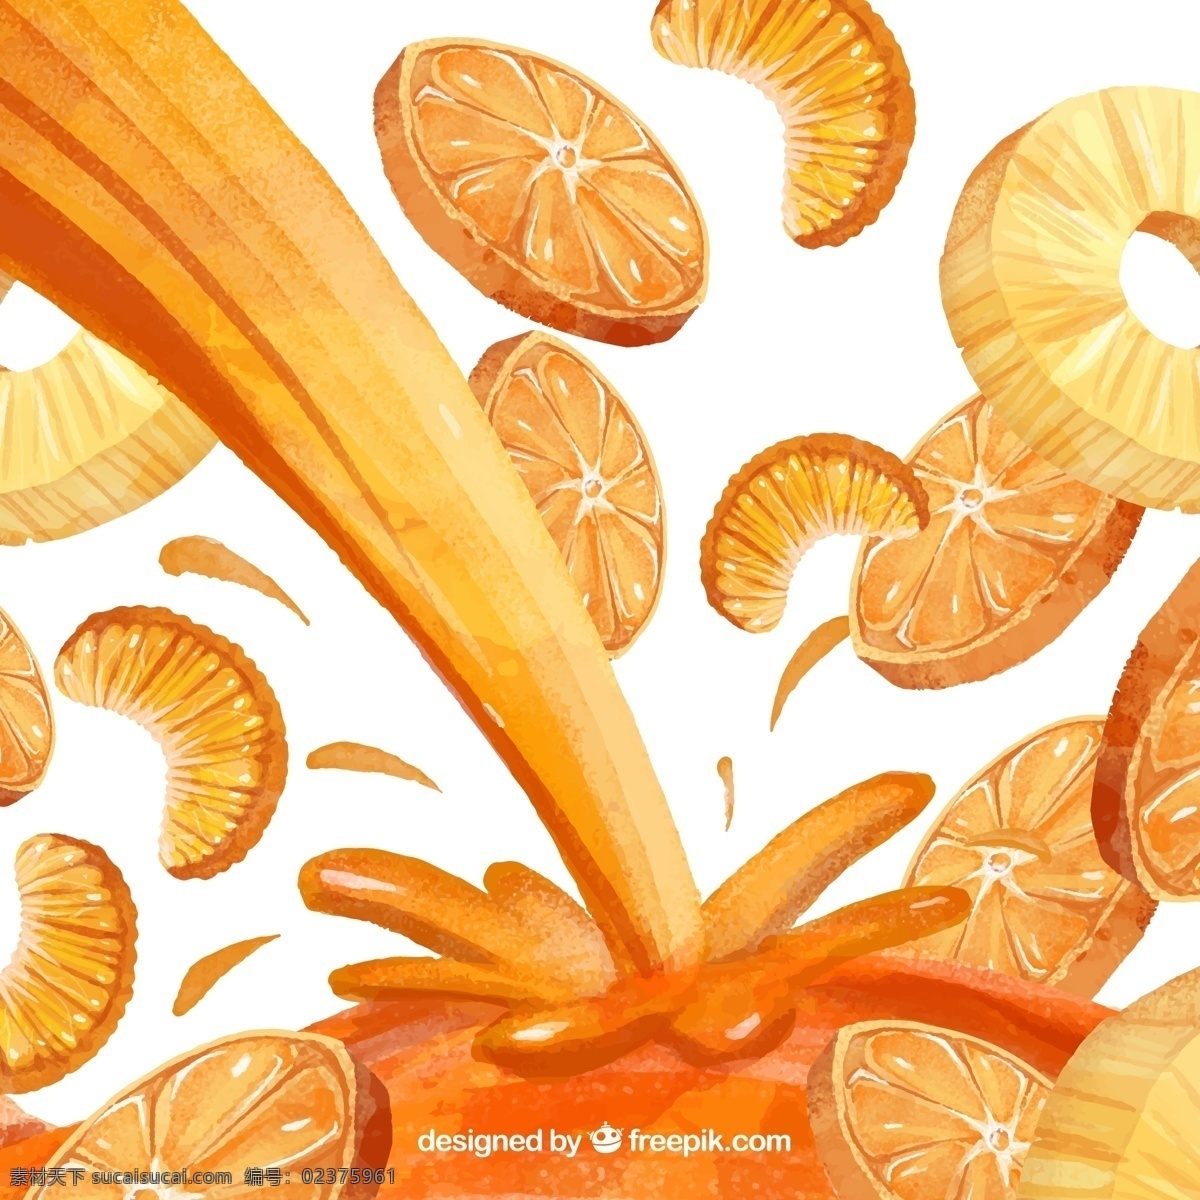 美味 橙子 橙汁 矢量 桔子 插画 水果